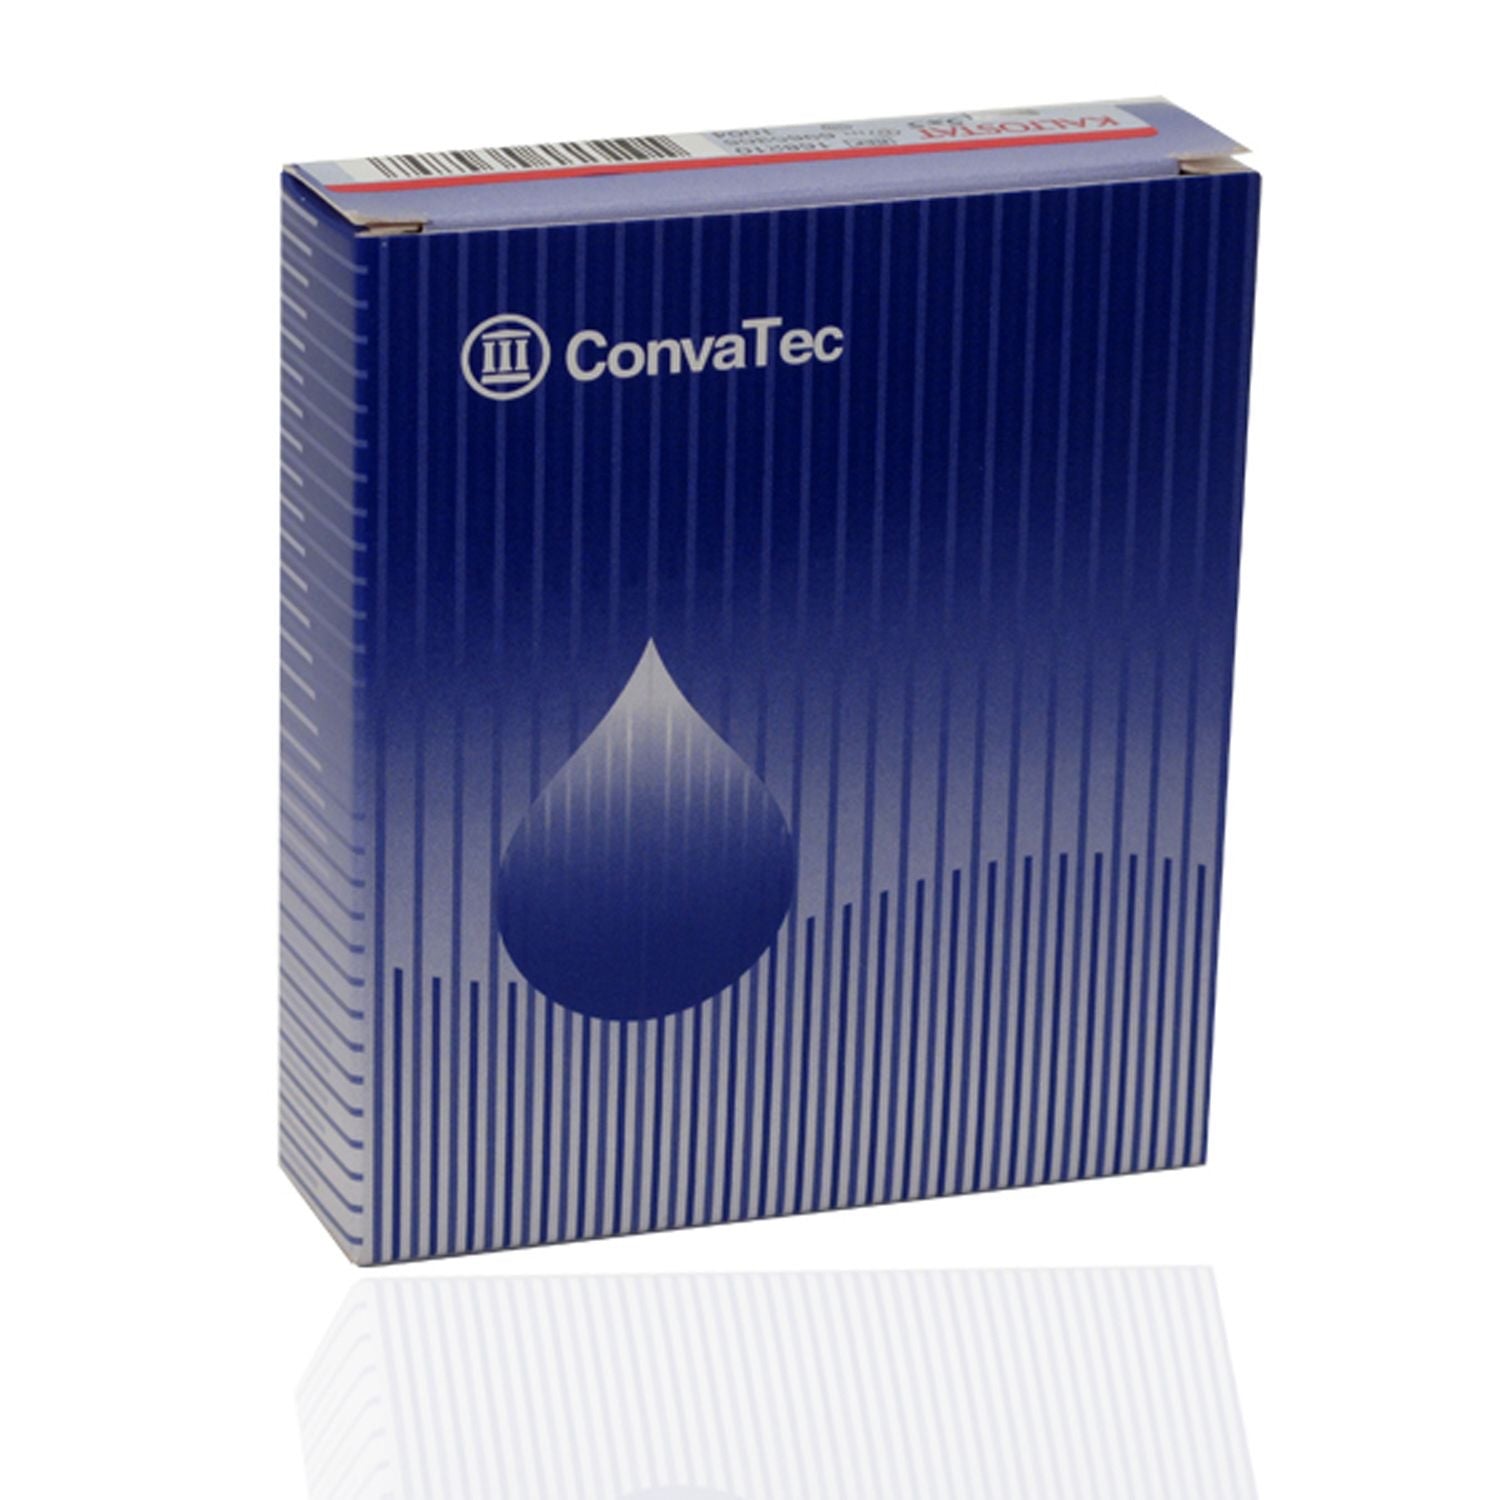 Convatec Kaltostat Calcium Alginate Wound Dressing | 7.5 x 12cm | Pack of 10